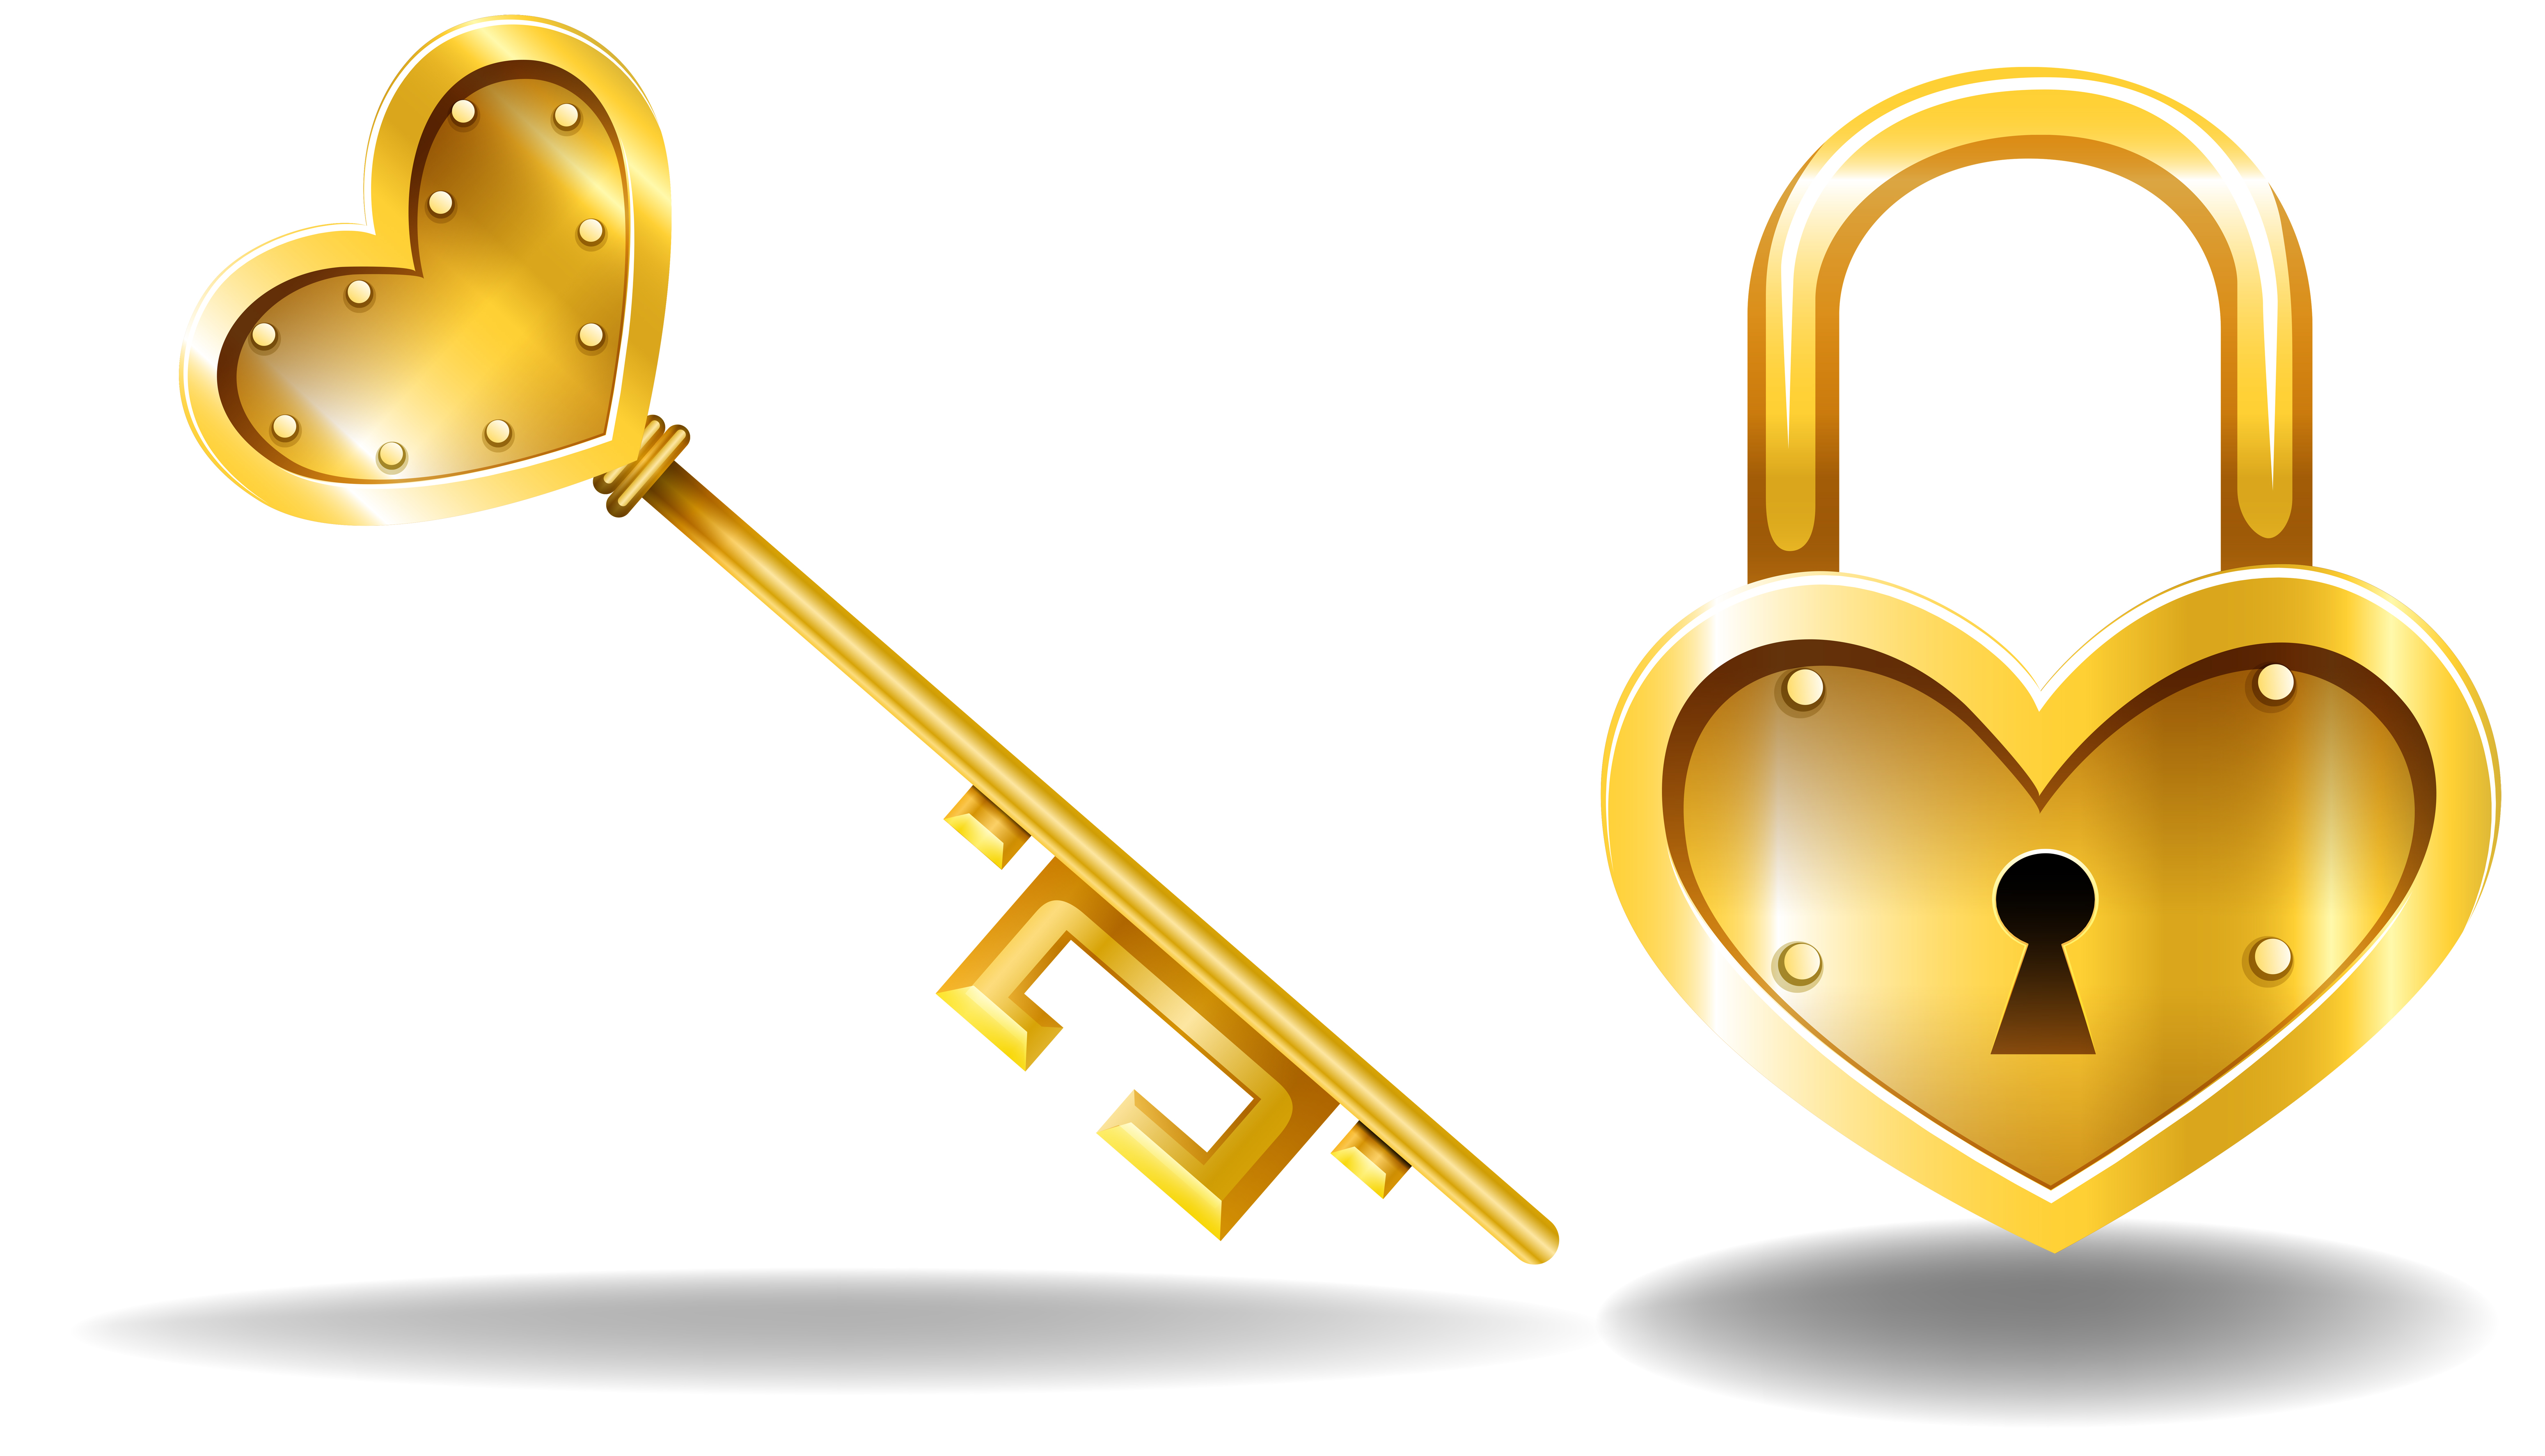 Femdom lock and key